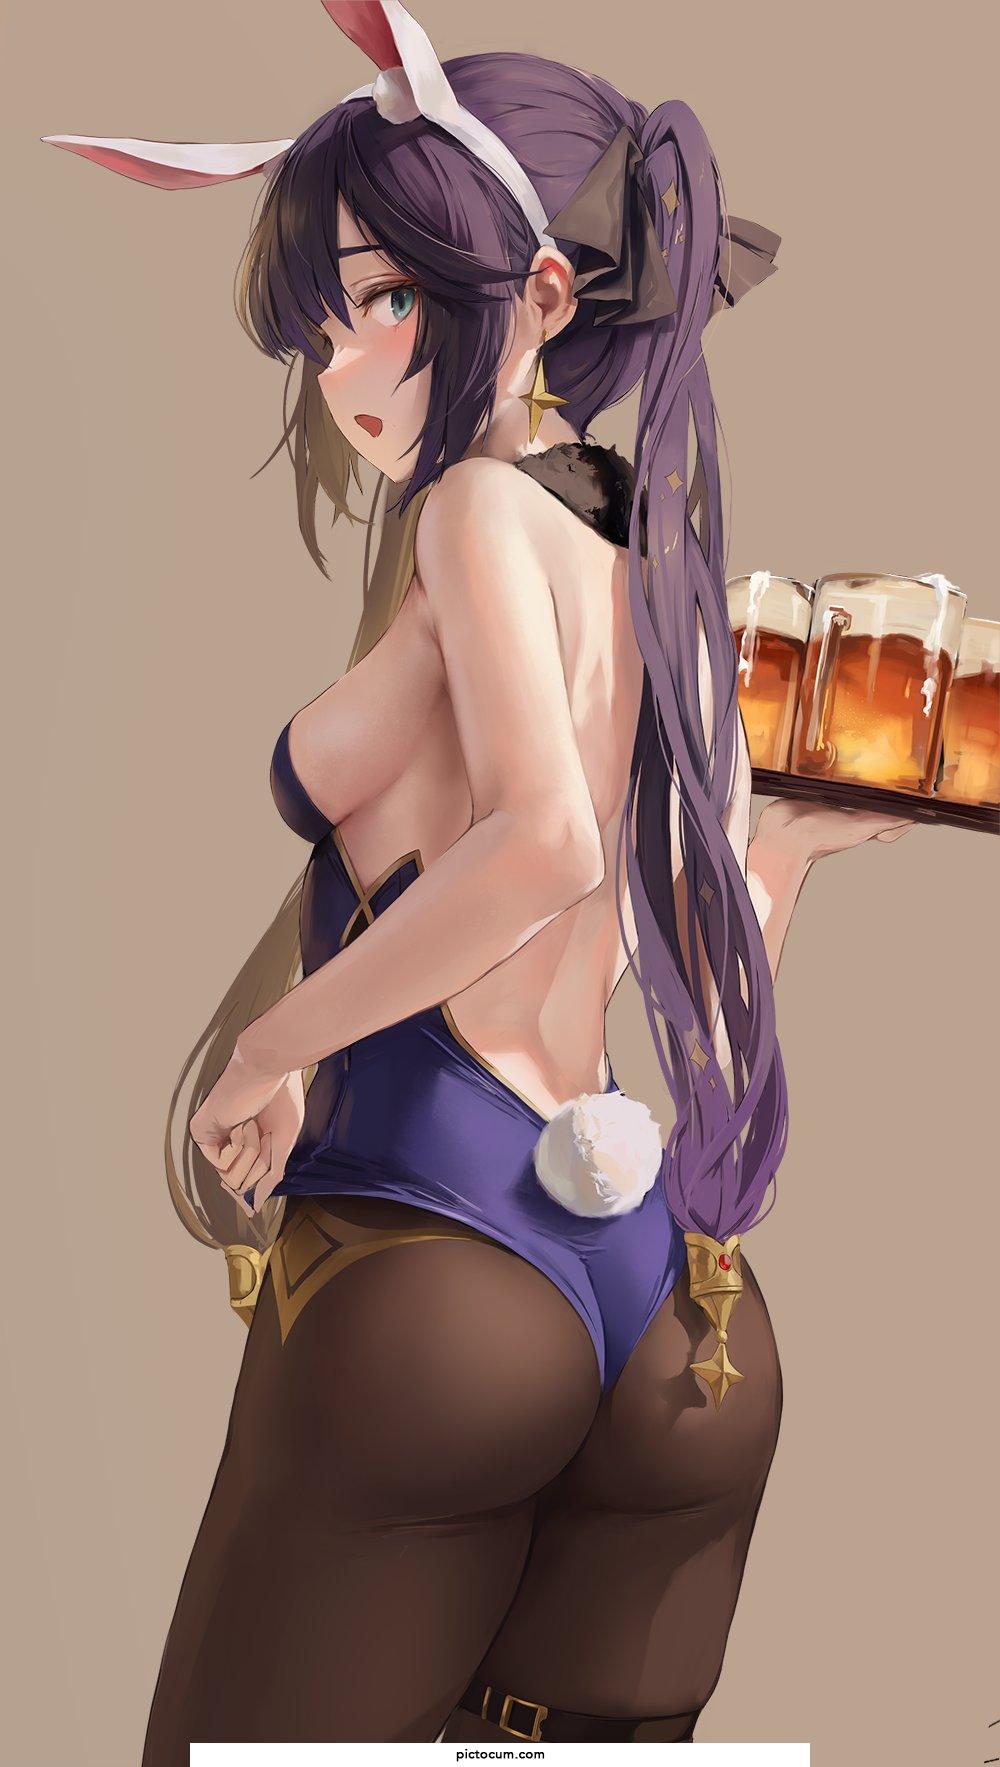 Mona Serving Beers